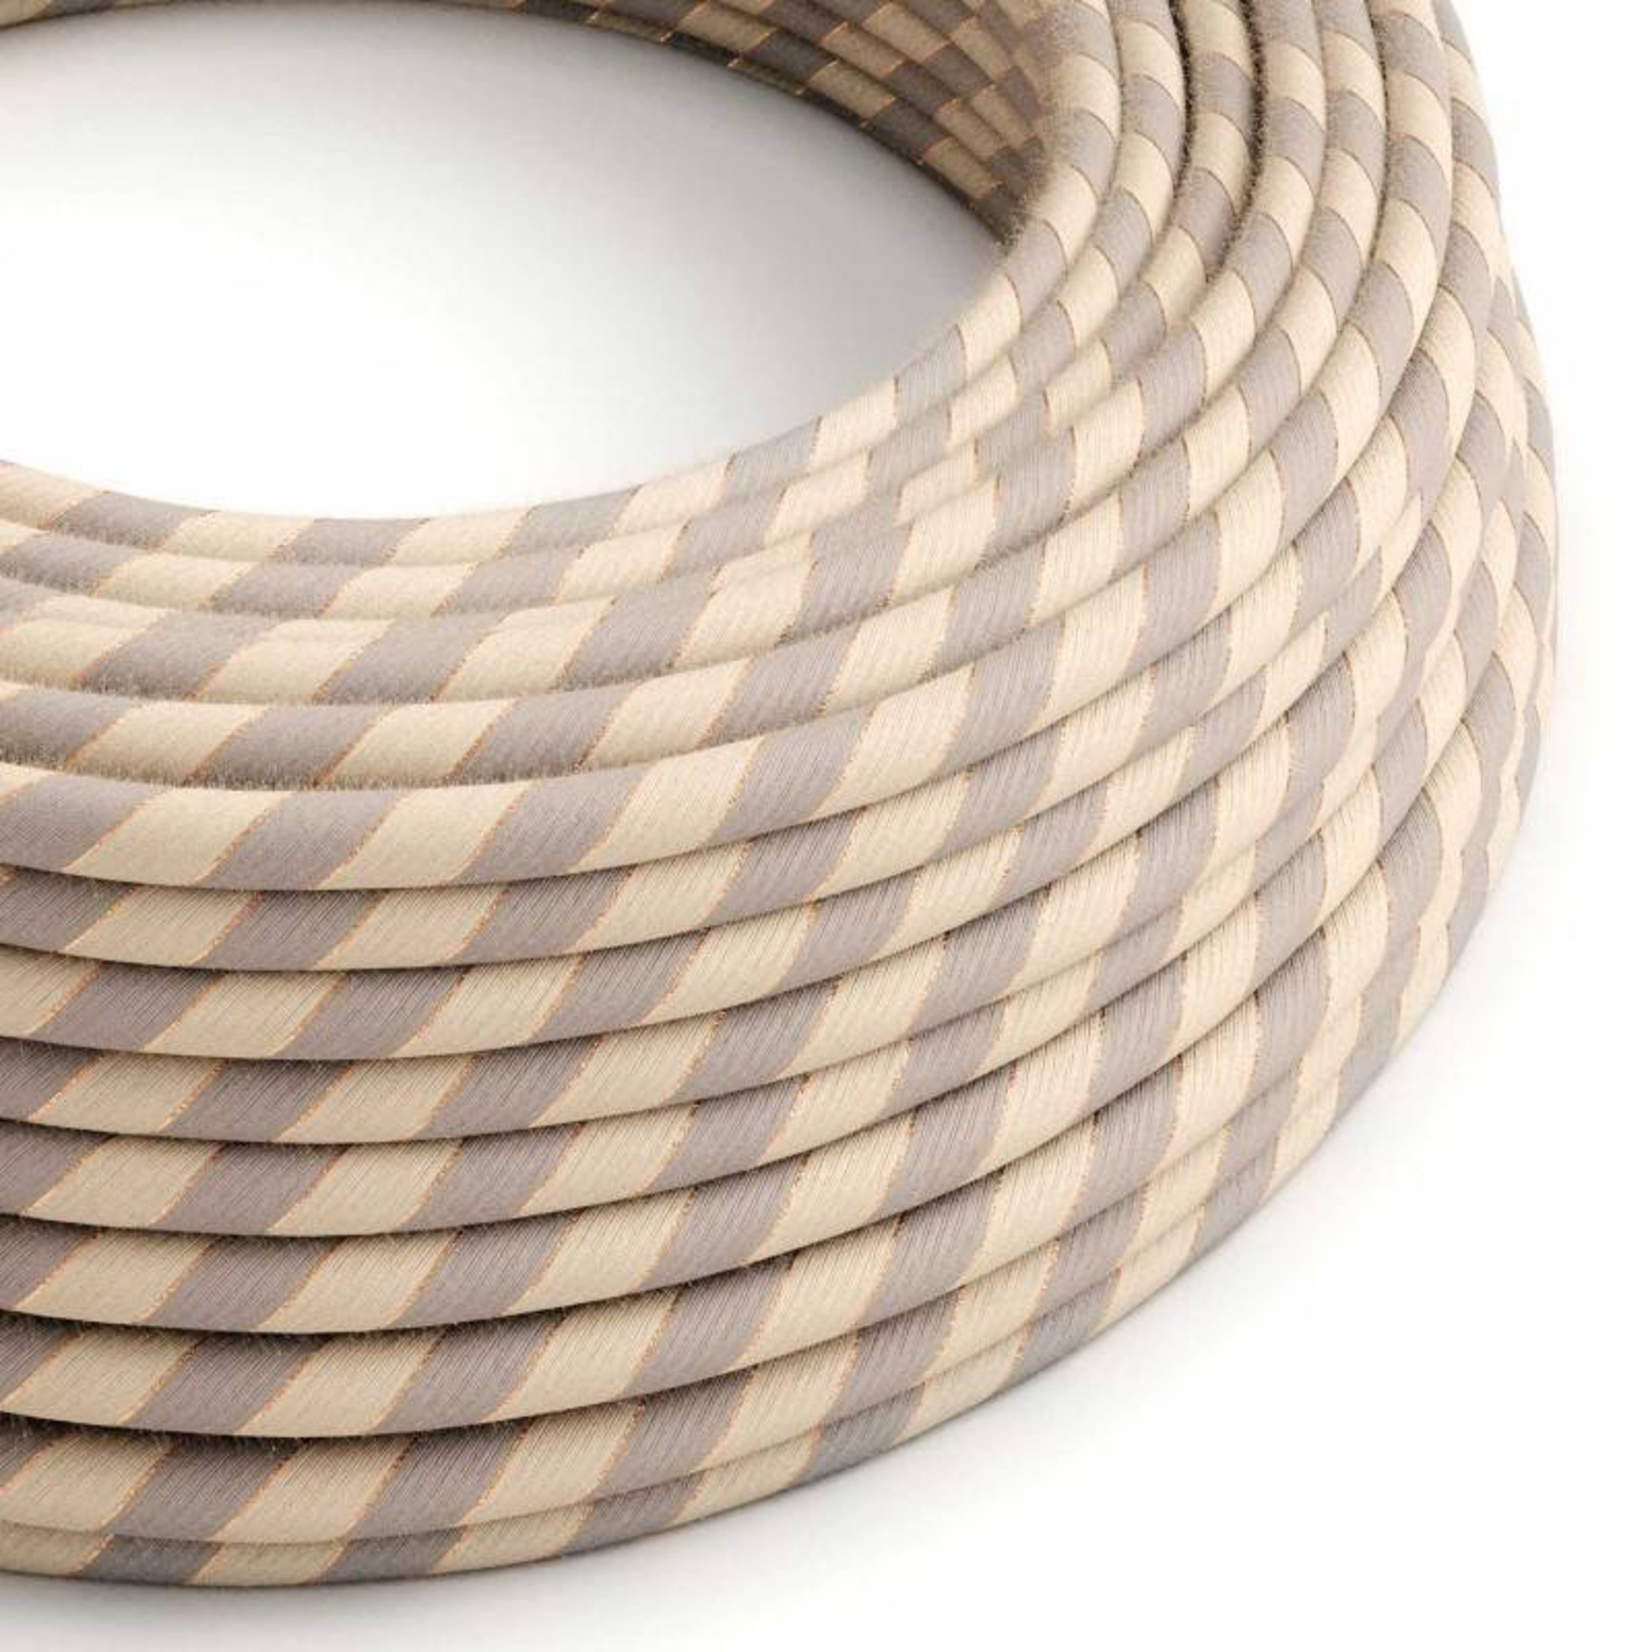 CCIT Per Metre - Round Electric 3 Core Vertigo Cable covered by Cotton and Linen With Copper Thread Flex